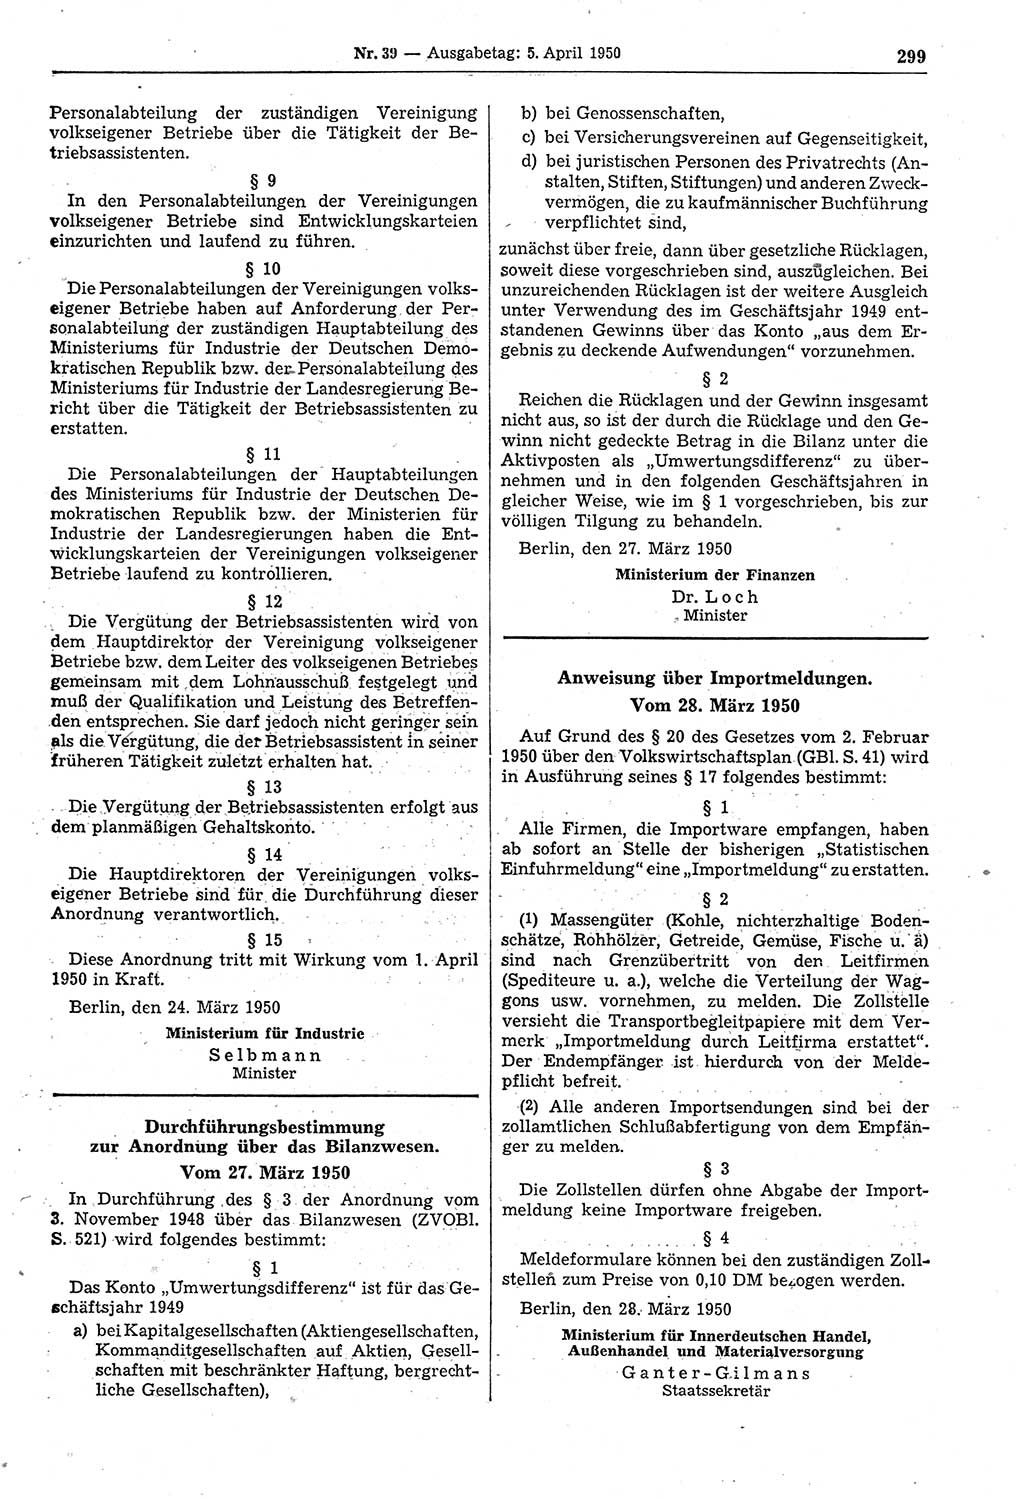 Gesetzblatt (GBl.) der Deutschen Demokratischen Republik (DDR) 1950, Seite 299 (GBl. DDR 1950, S. 299)